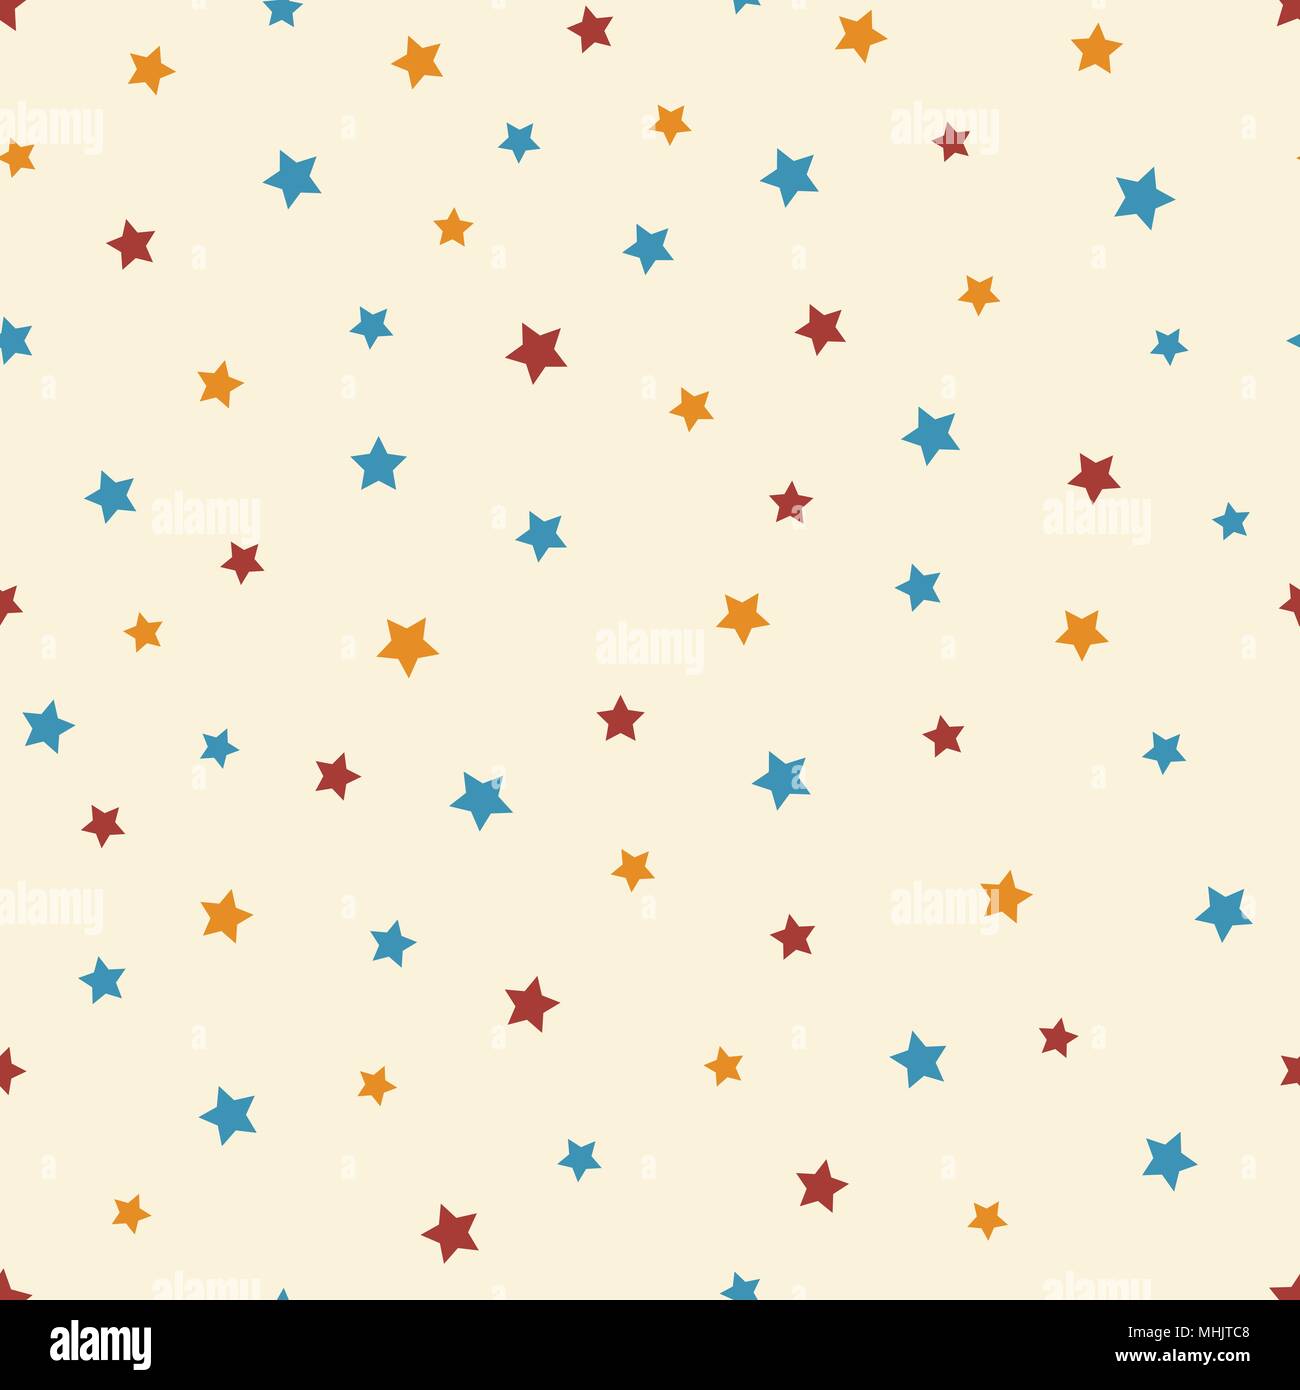 Abstractos vectores estrellado en el patrón perfecto de fondo de color beige. Lindo azul, rojo y naranja estrellas. Ilustración del Vector